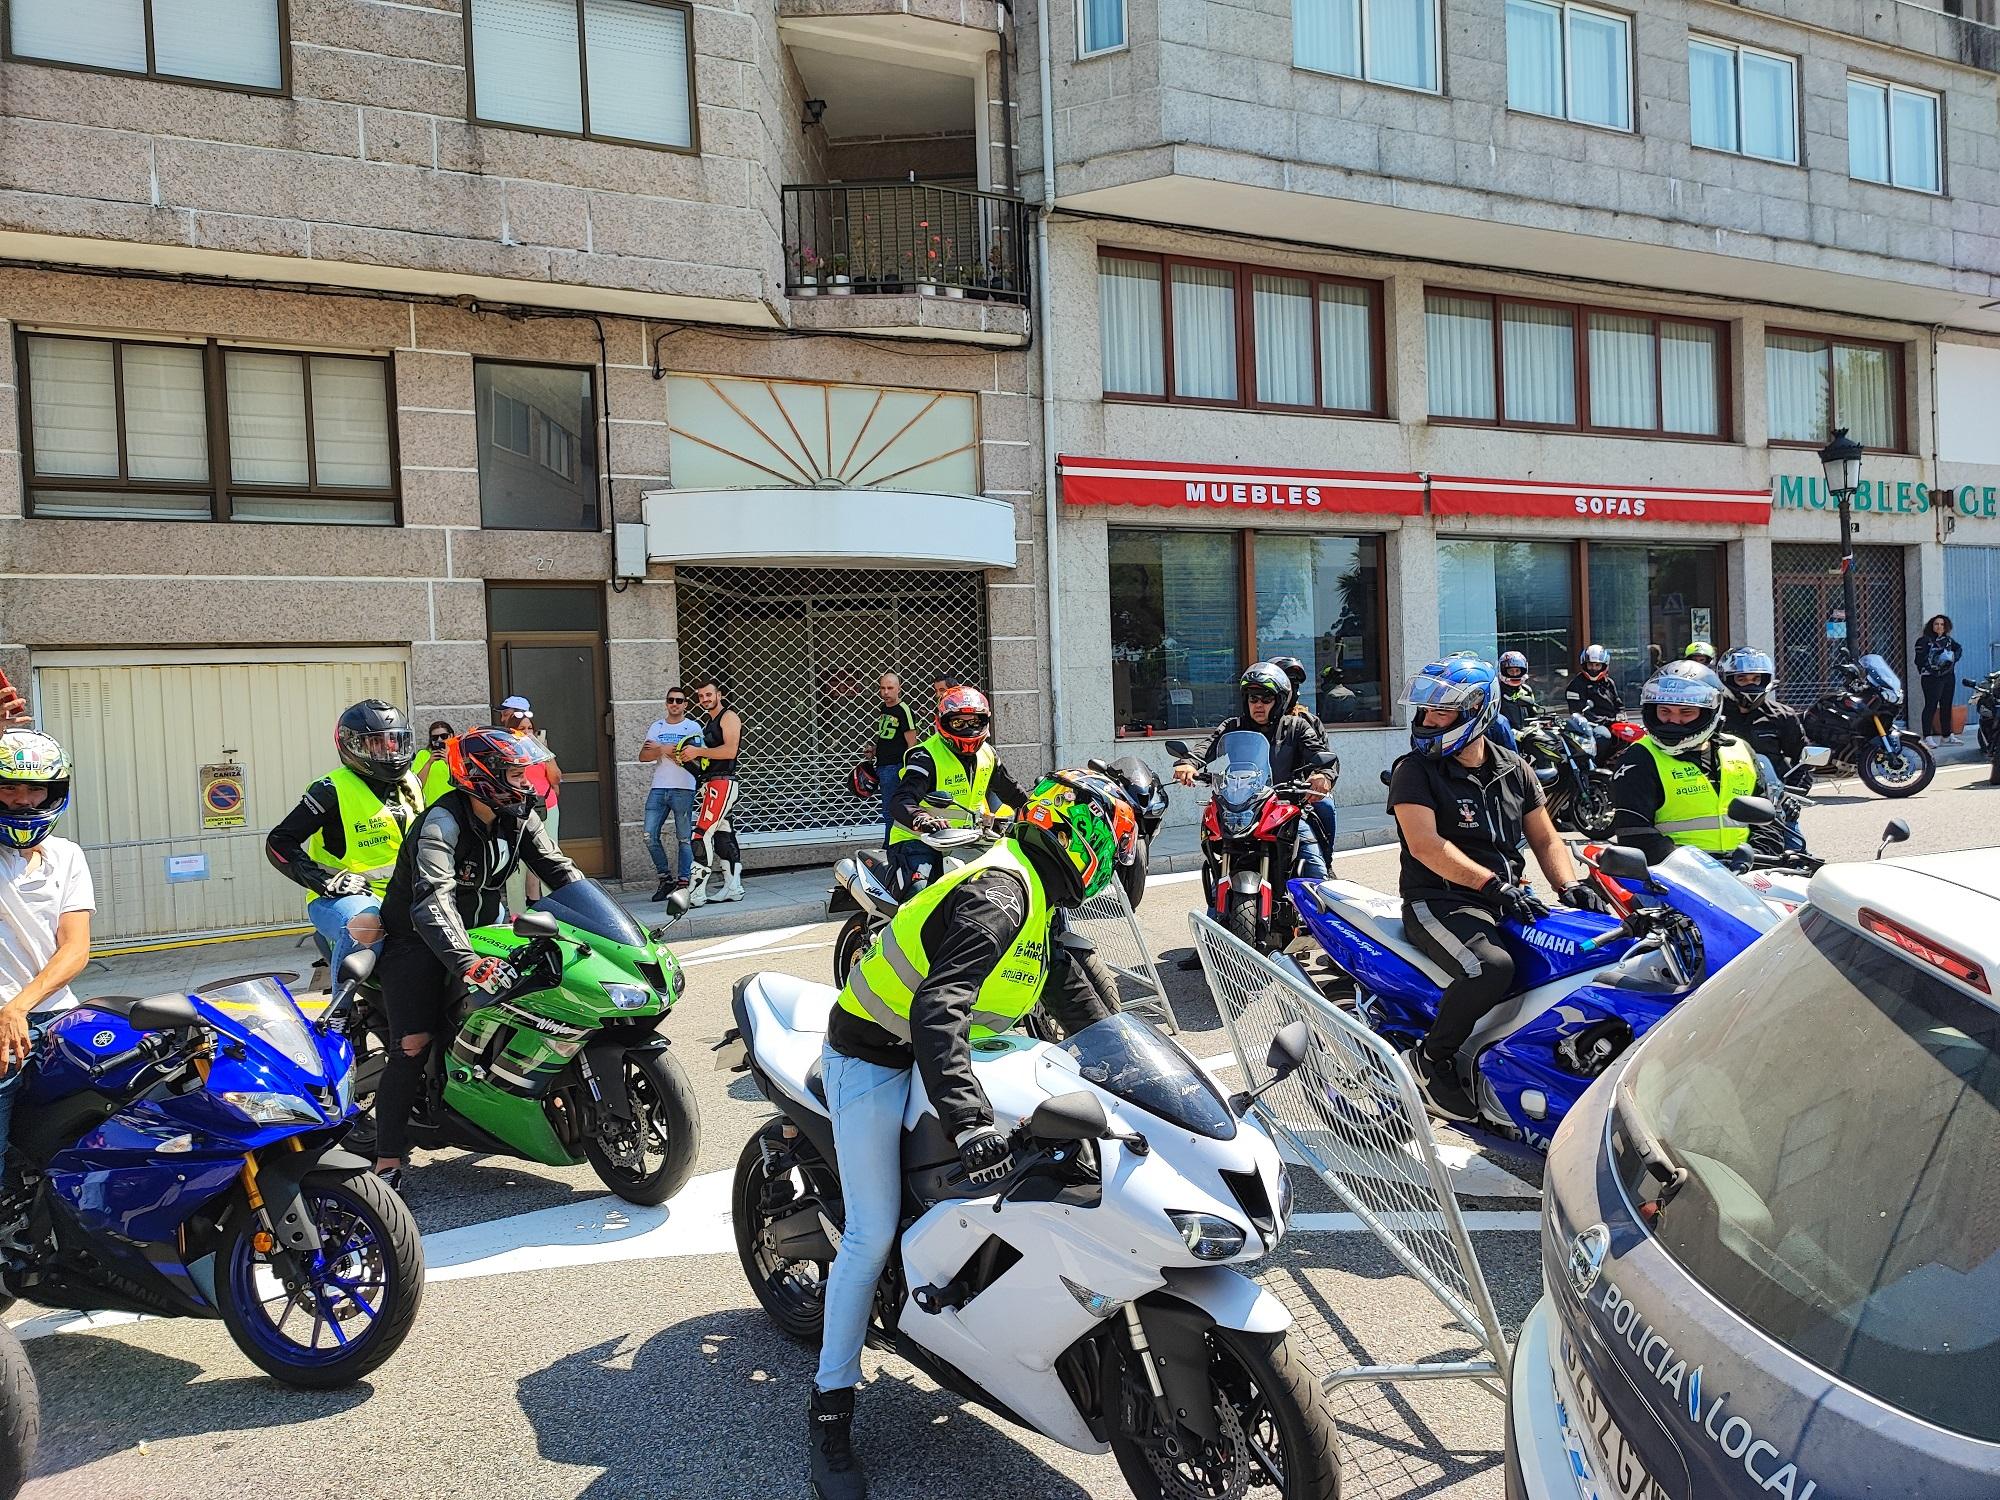 Este 31 de xullo A Cañiza acolleu a máis de 150 motos na sua "Xuntanza Moteira" organizada polo Clube Os Polemans